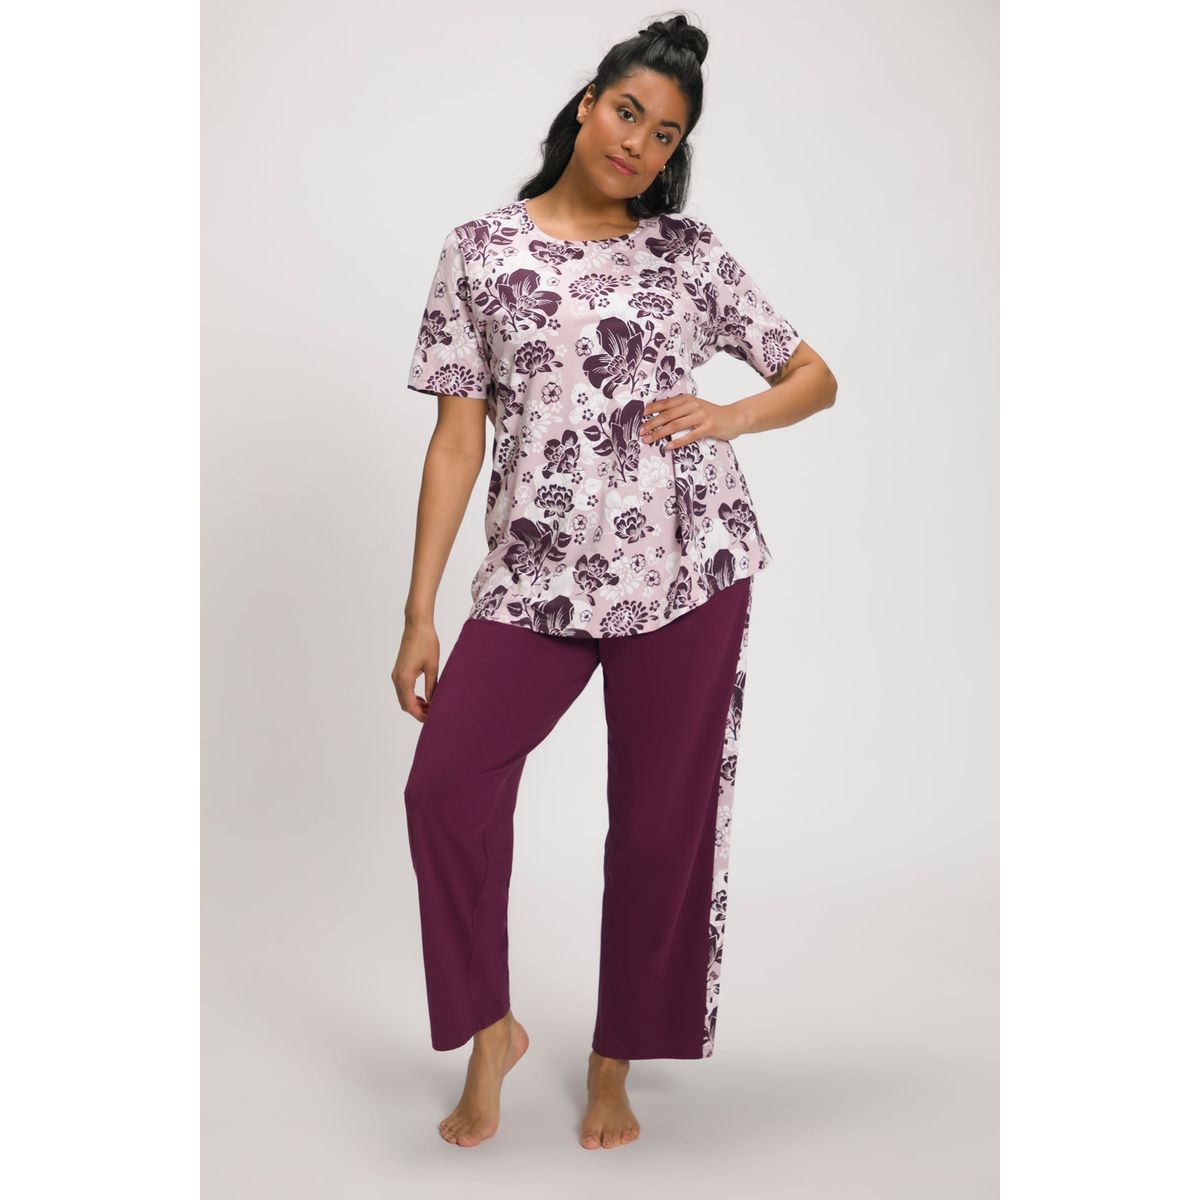 La Redoute Vêtements Sous-vêtements vêtements de nuit Pyjamas Pyjama fleurs coton 